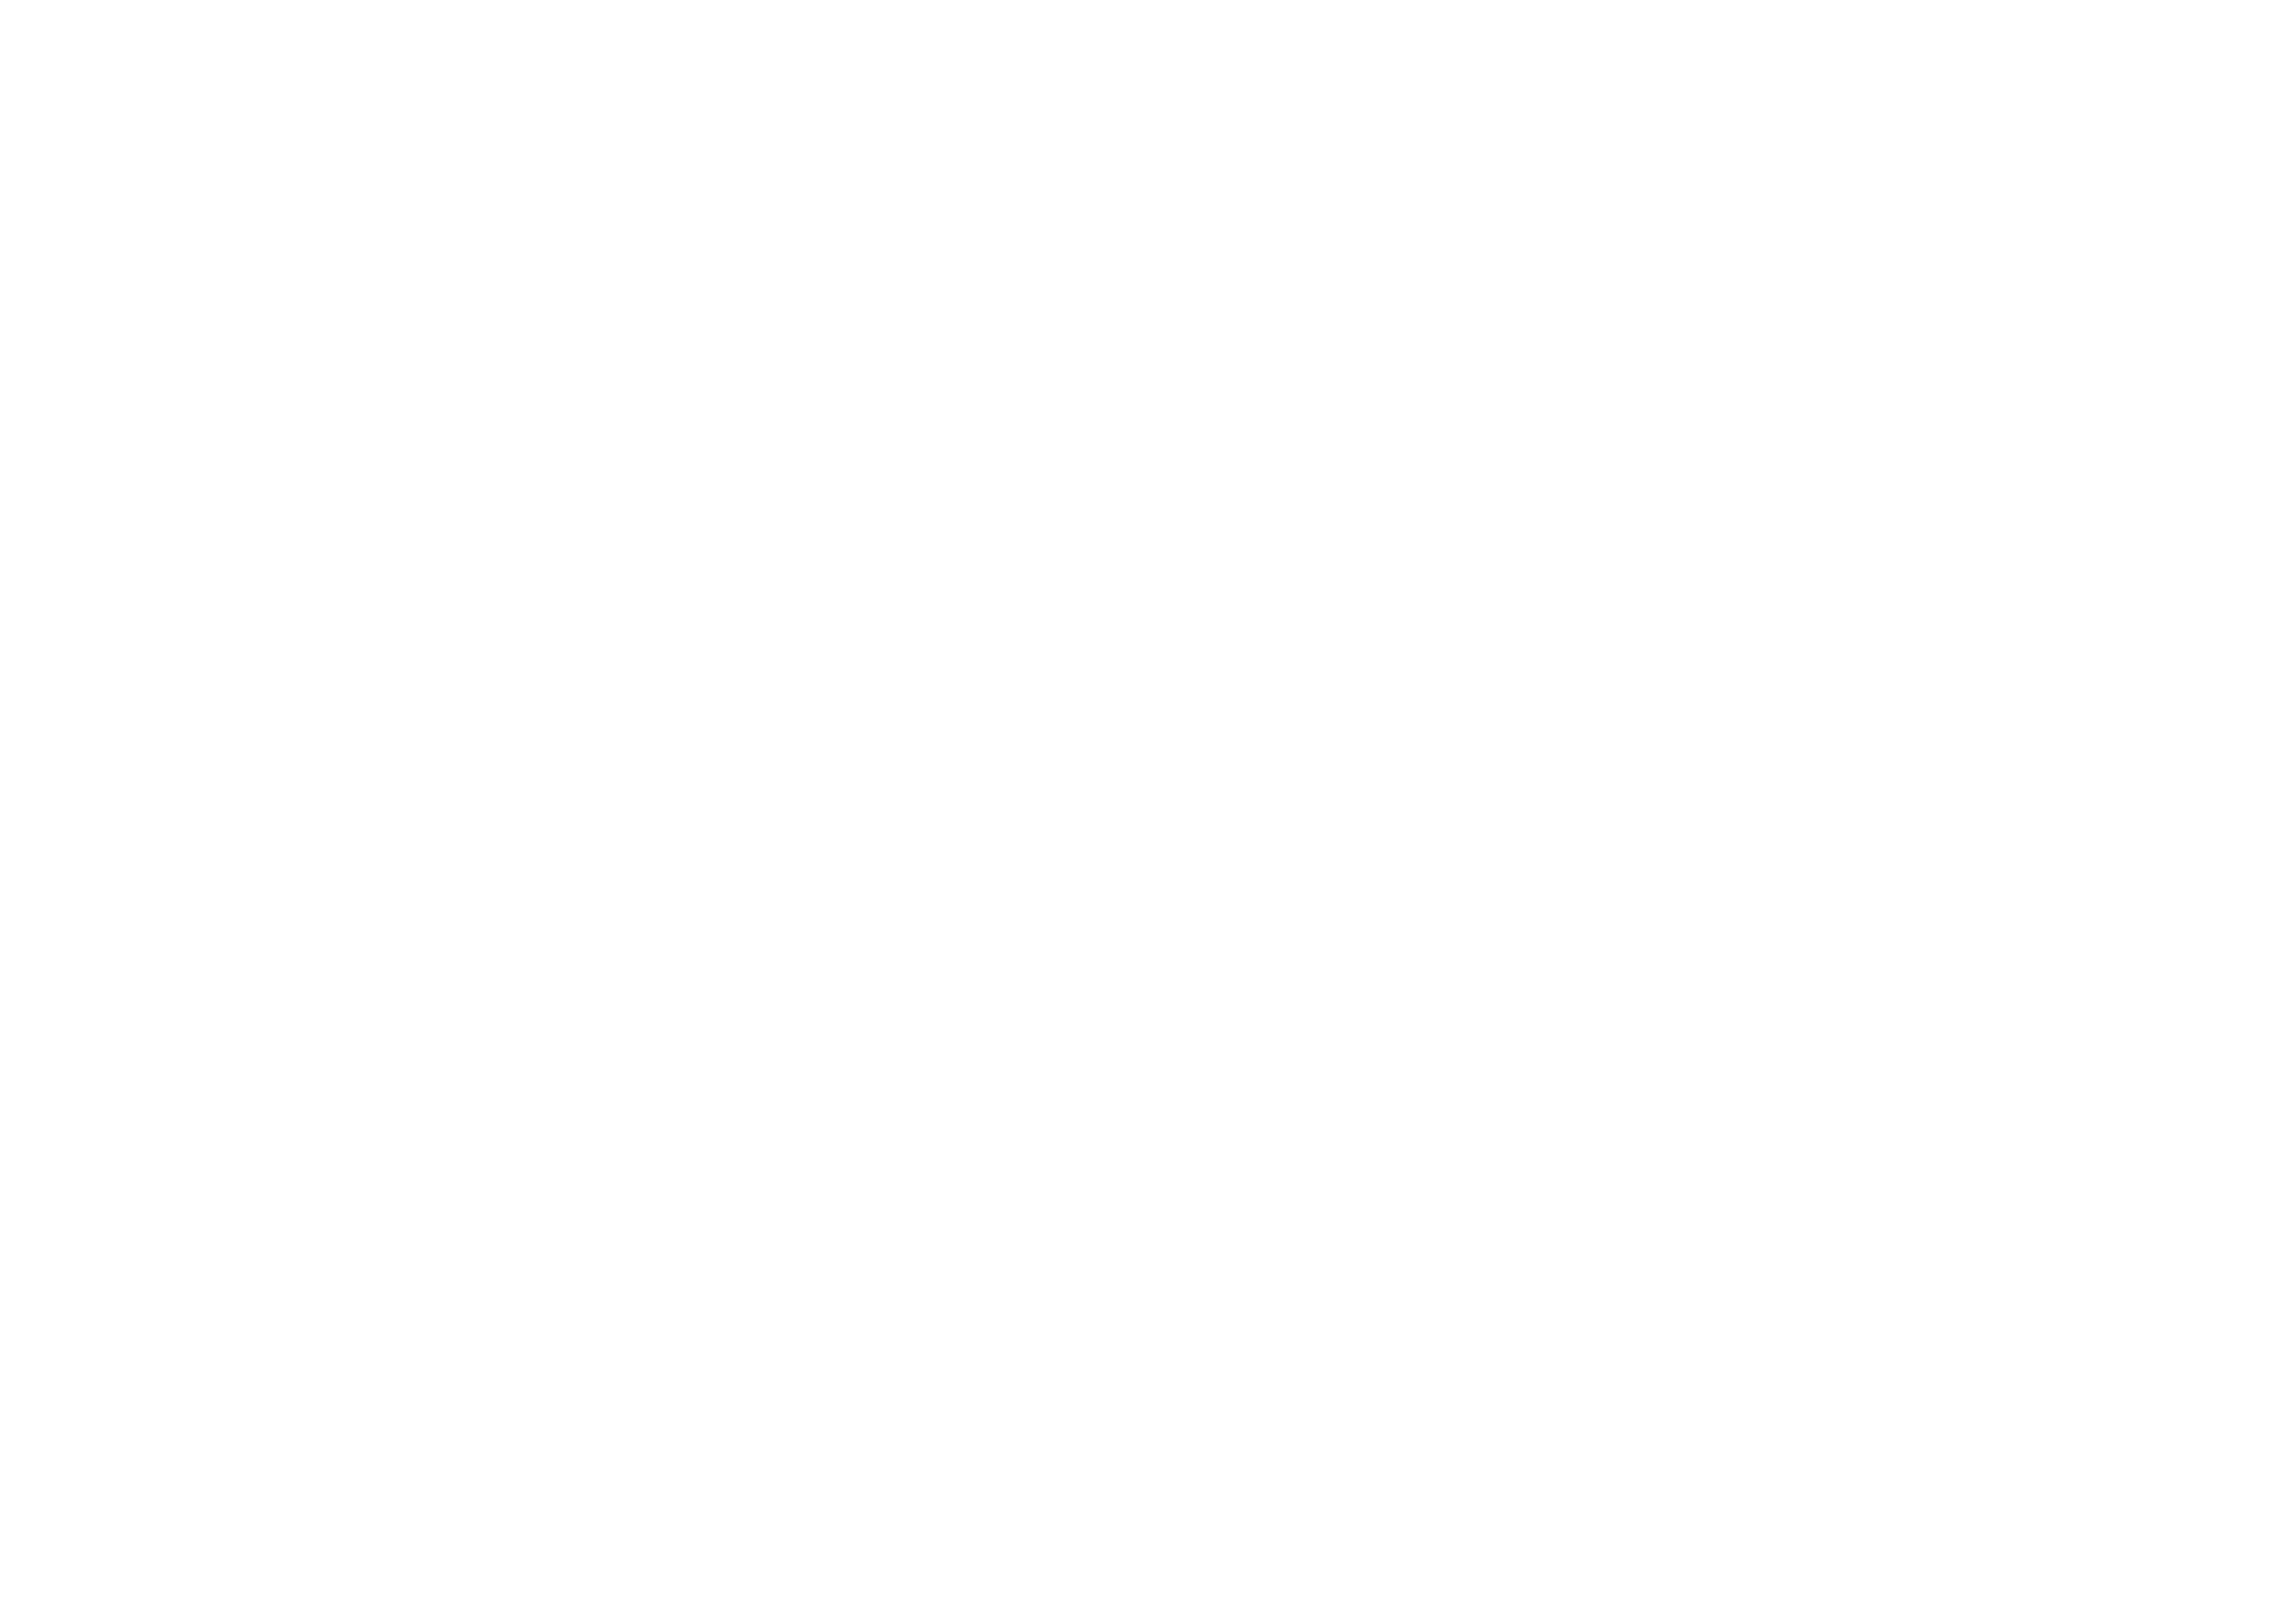 Centre Hospitalier de la Corniche Angevine